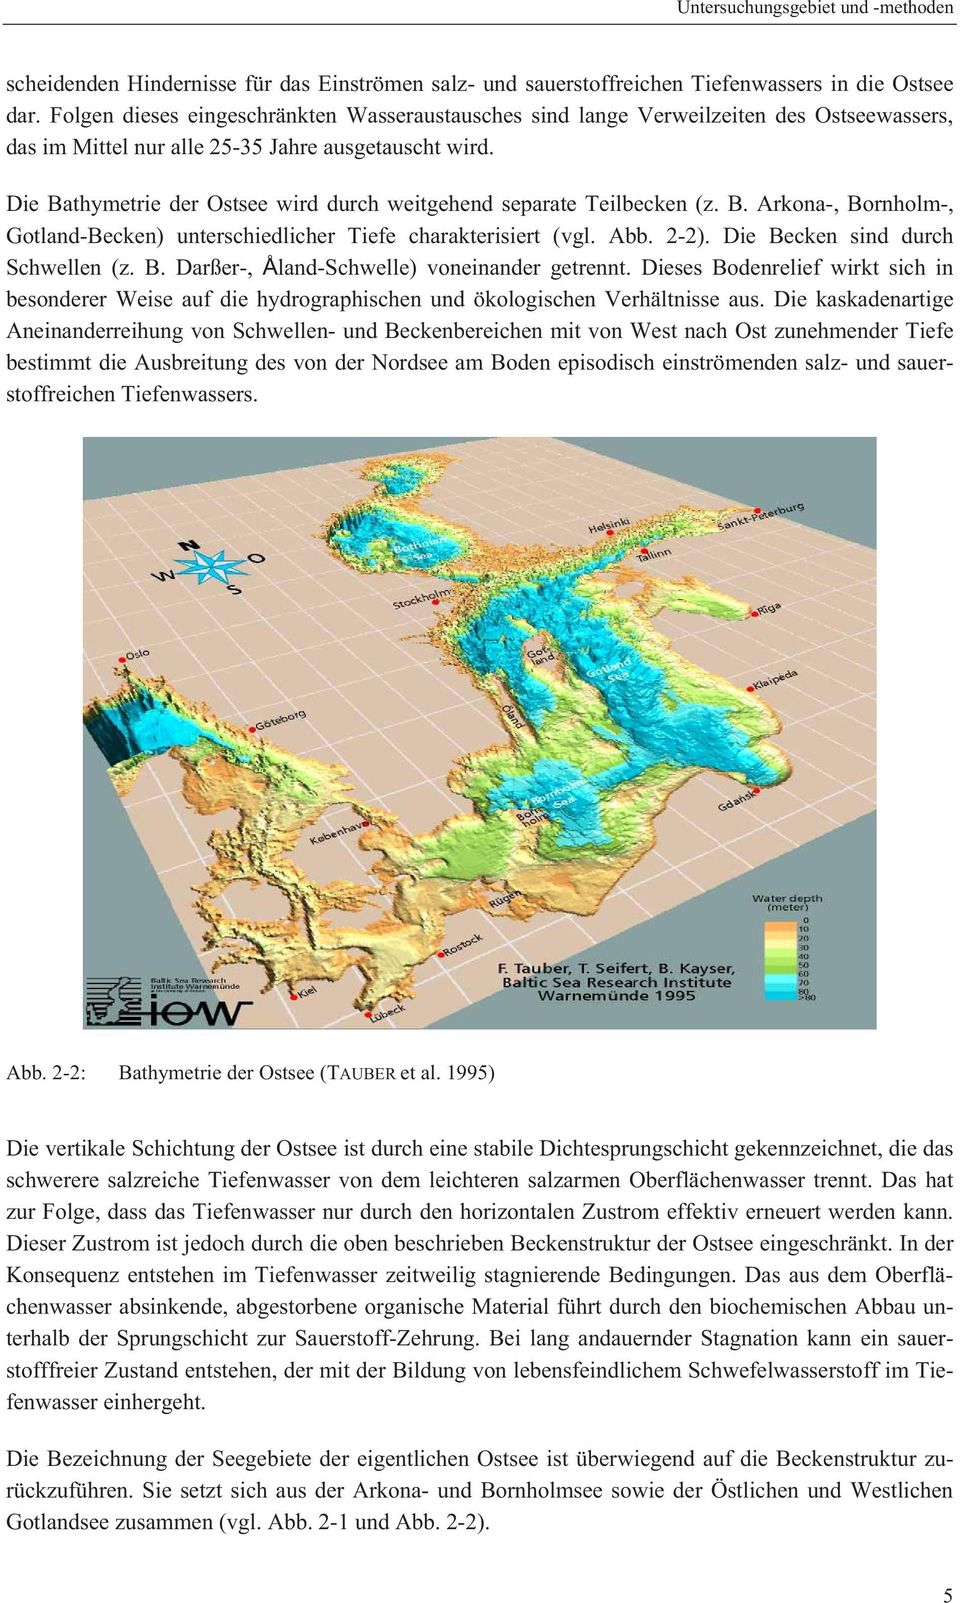 Die Bathymetrie der Ostsee wird durch weitgehend separate Teilbecken (z. B. Arkona-, Bornholm-, Gotland-Becken) unterschiedlicher Tiefe charakterisiert (vgl. Abb. 2-2).